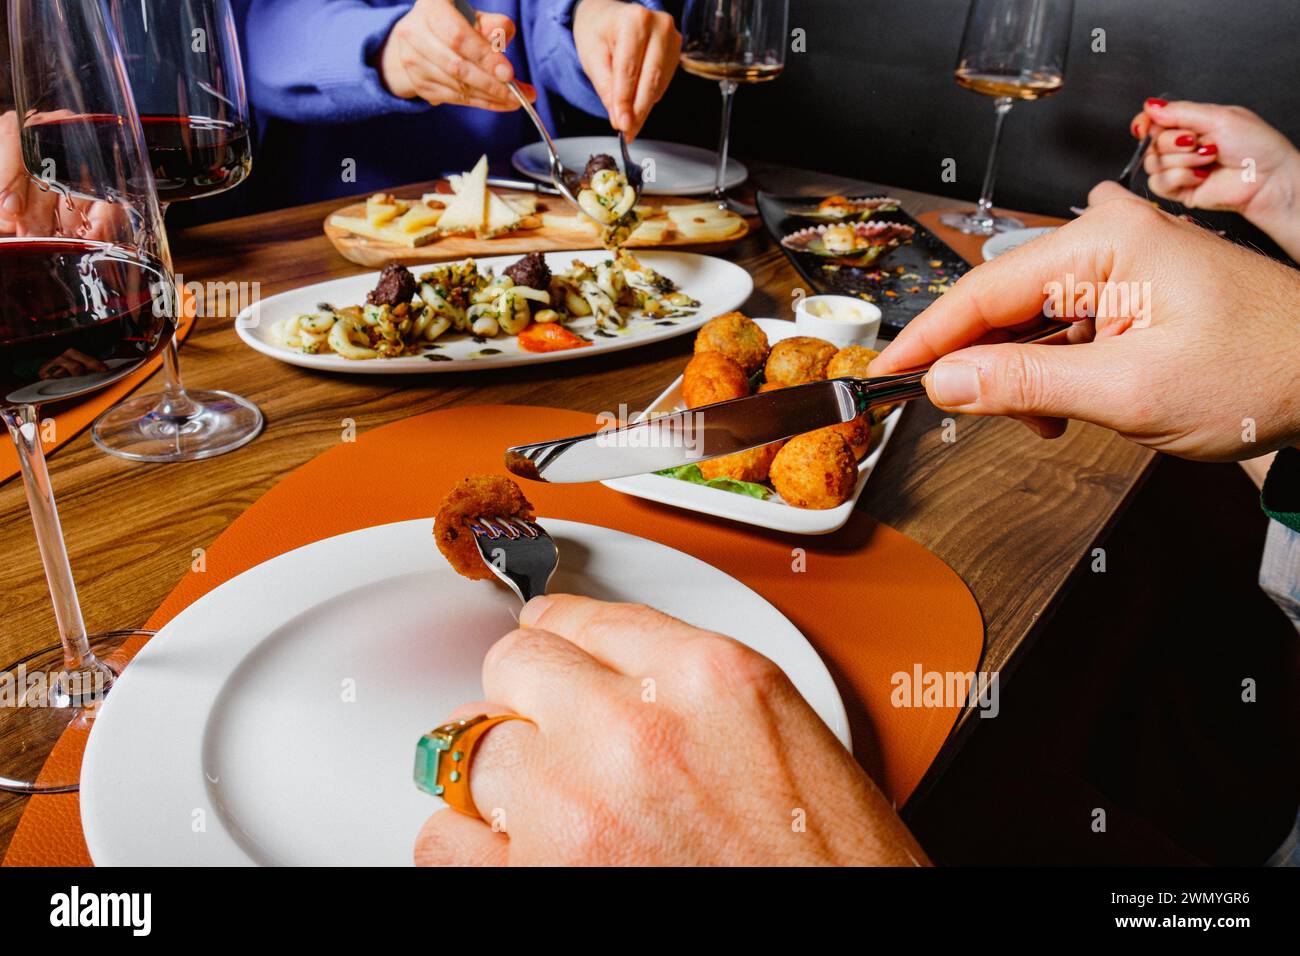 Gäste teilen sich eine Auswahl an Gourmetgerichten und Gläsern Rotwein an einem gemütlichen Esstisch Stockfoto